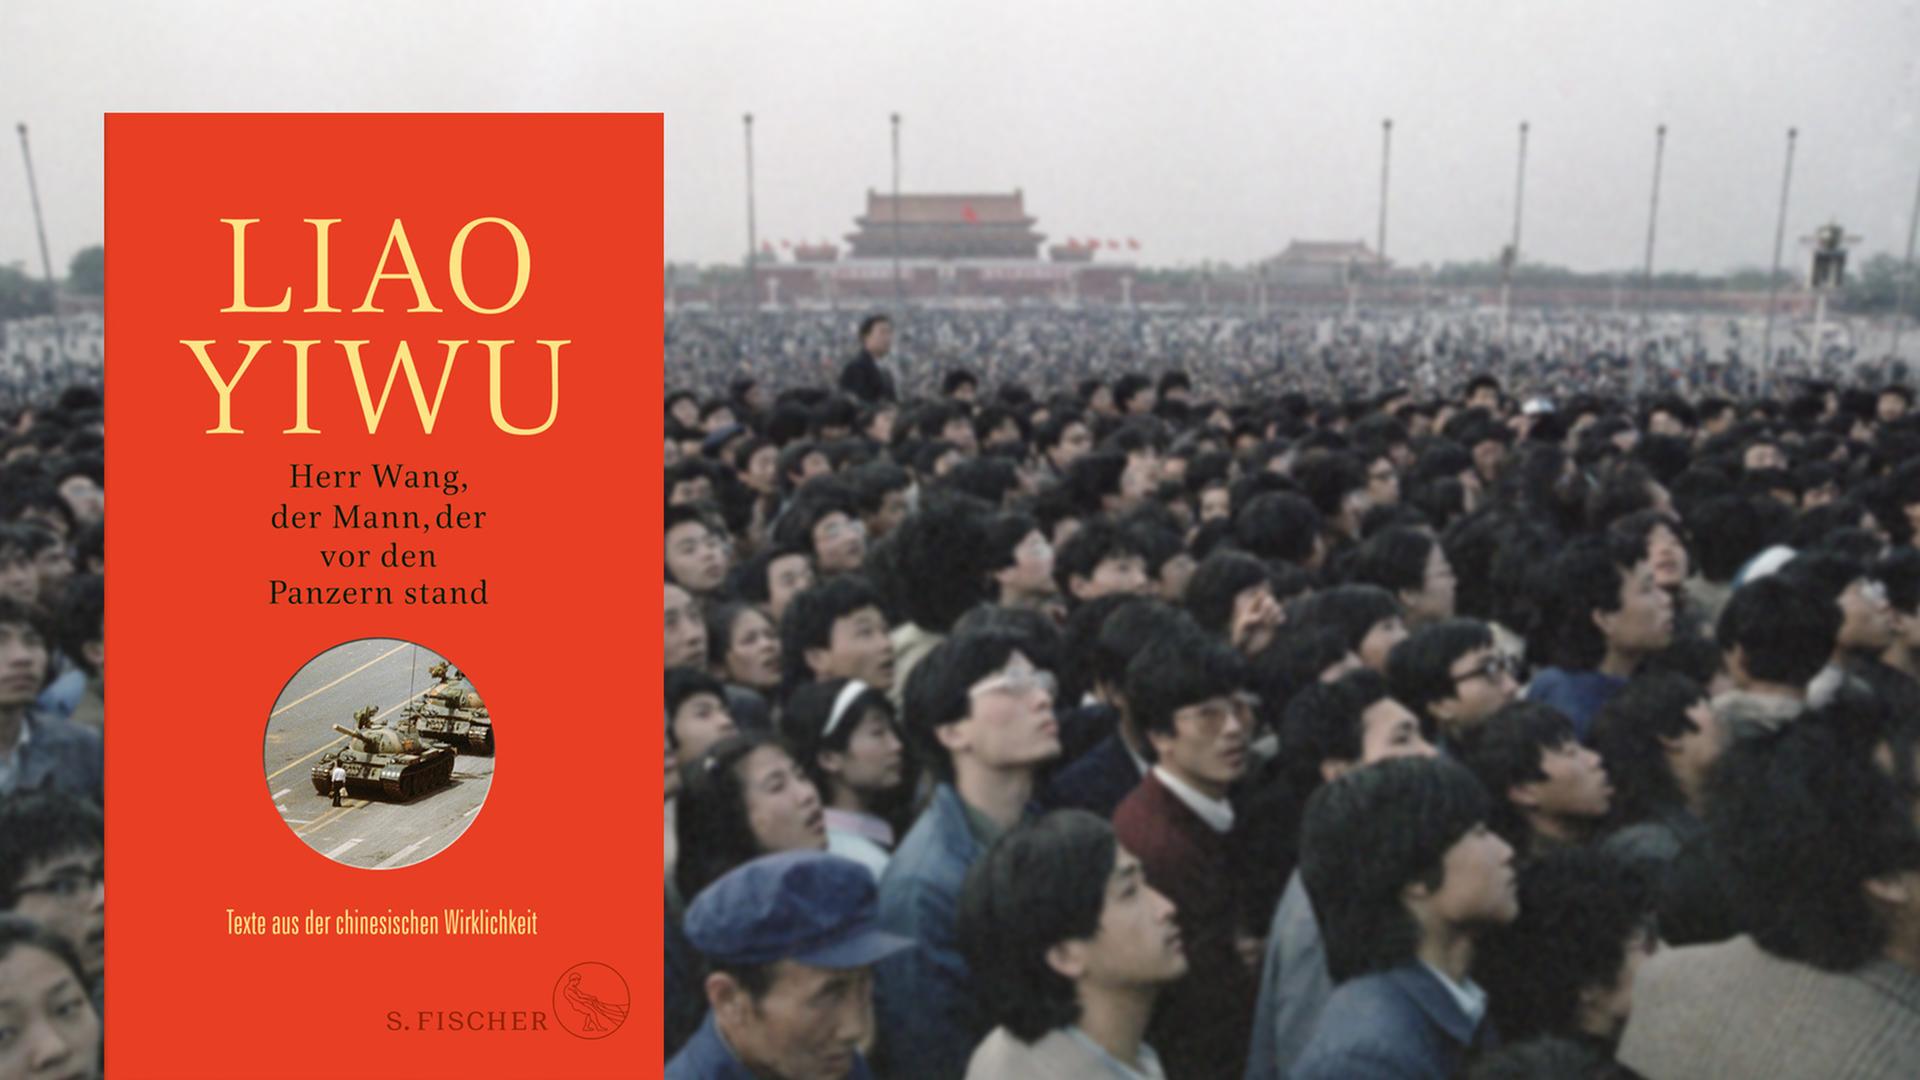 Eine Montage zeigt das Buchcover "Herr Wang, der Mann der vor den Panzern stand" von Liao Yiwu, neben einem Foto von Tausenden Menschen auf dem Platz des Himmlischen Friedens in Peking vor 30 Jahren.